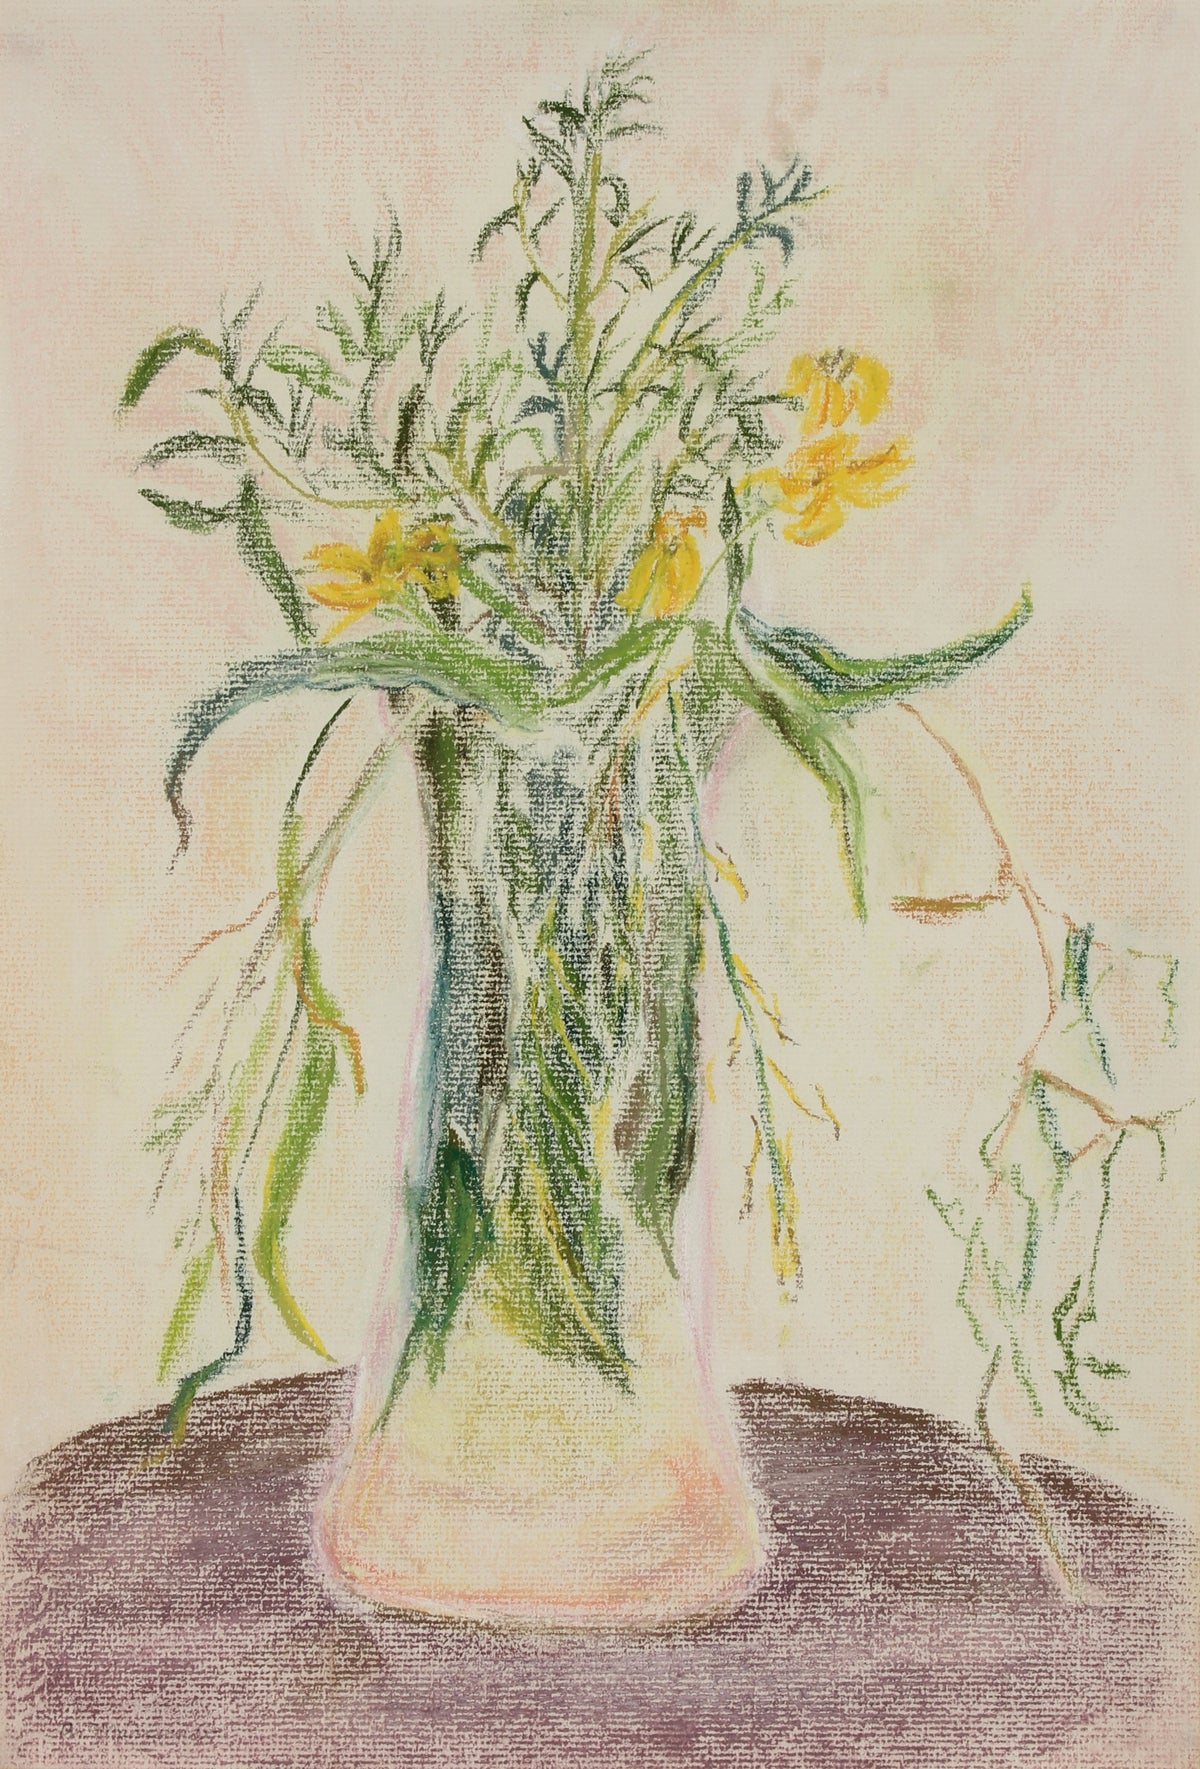 &lt;i&gt;Yellow Flowers in a Vase&lt;/i&gt;&lt;br&gt;1960s Pastel&lt;br&gt;&lt;br&gt;#89612